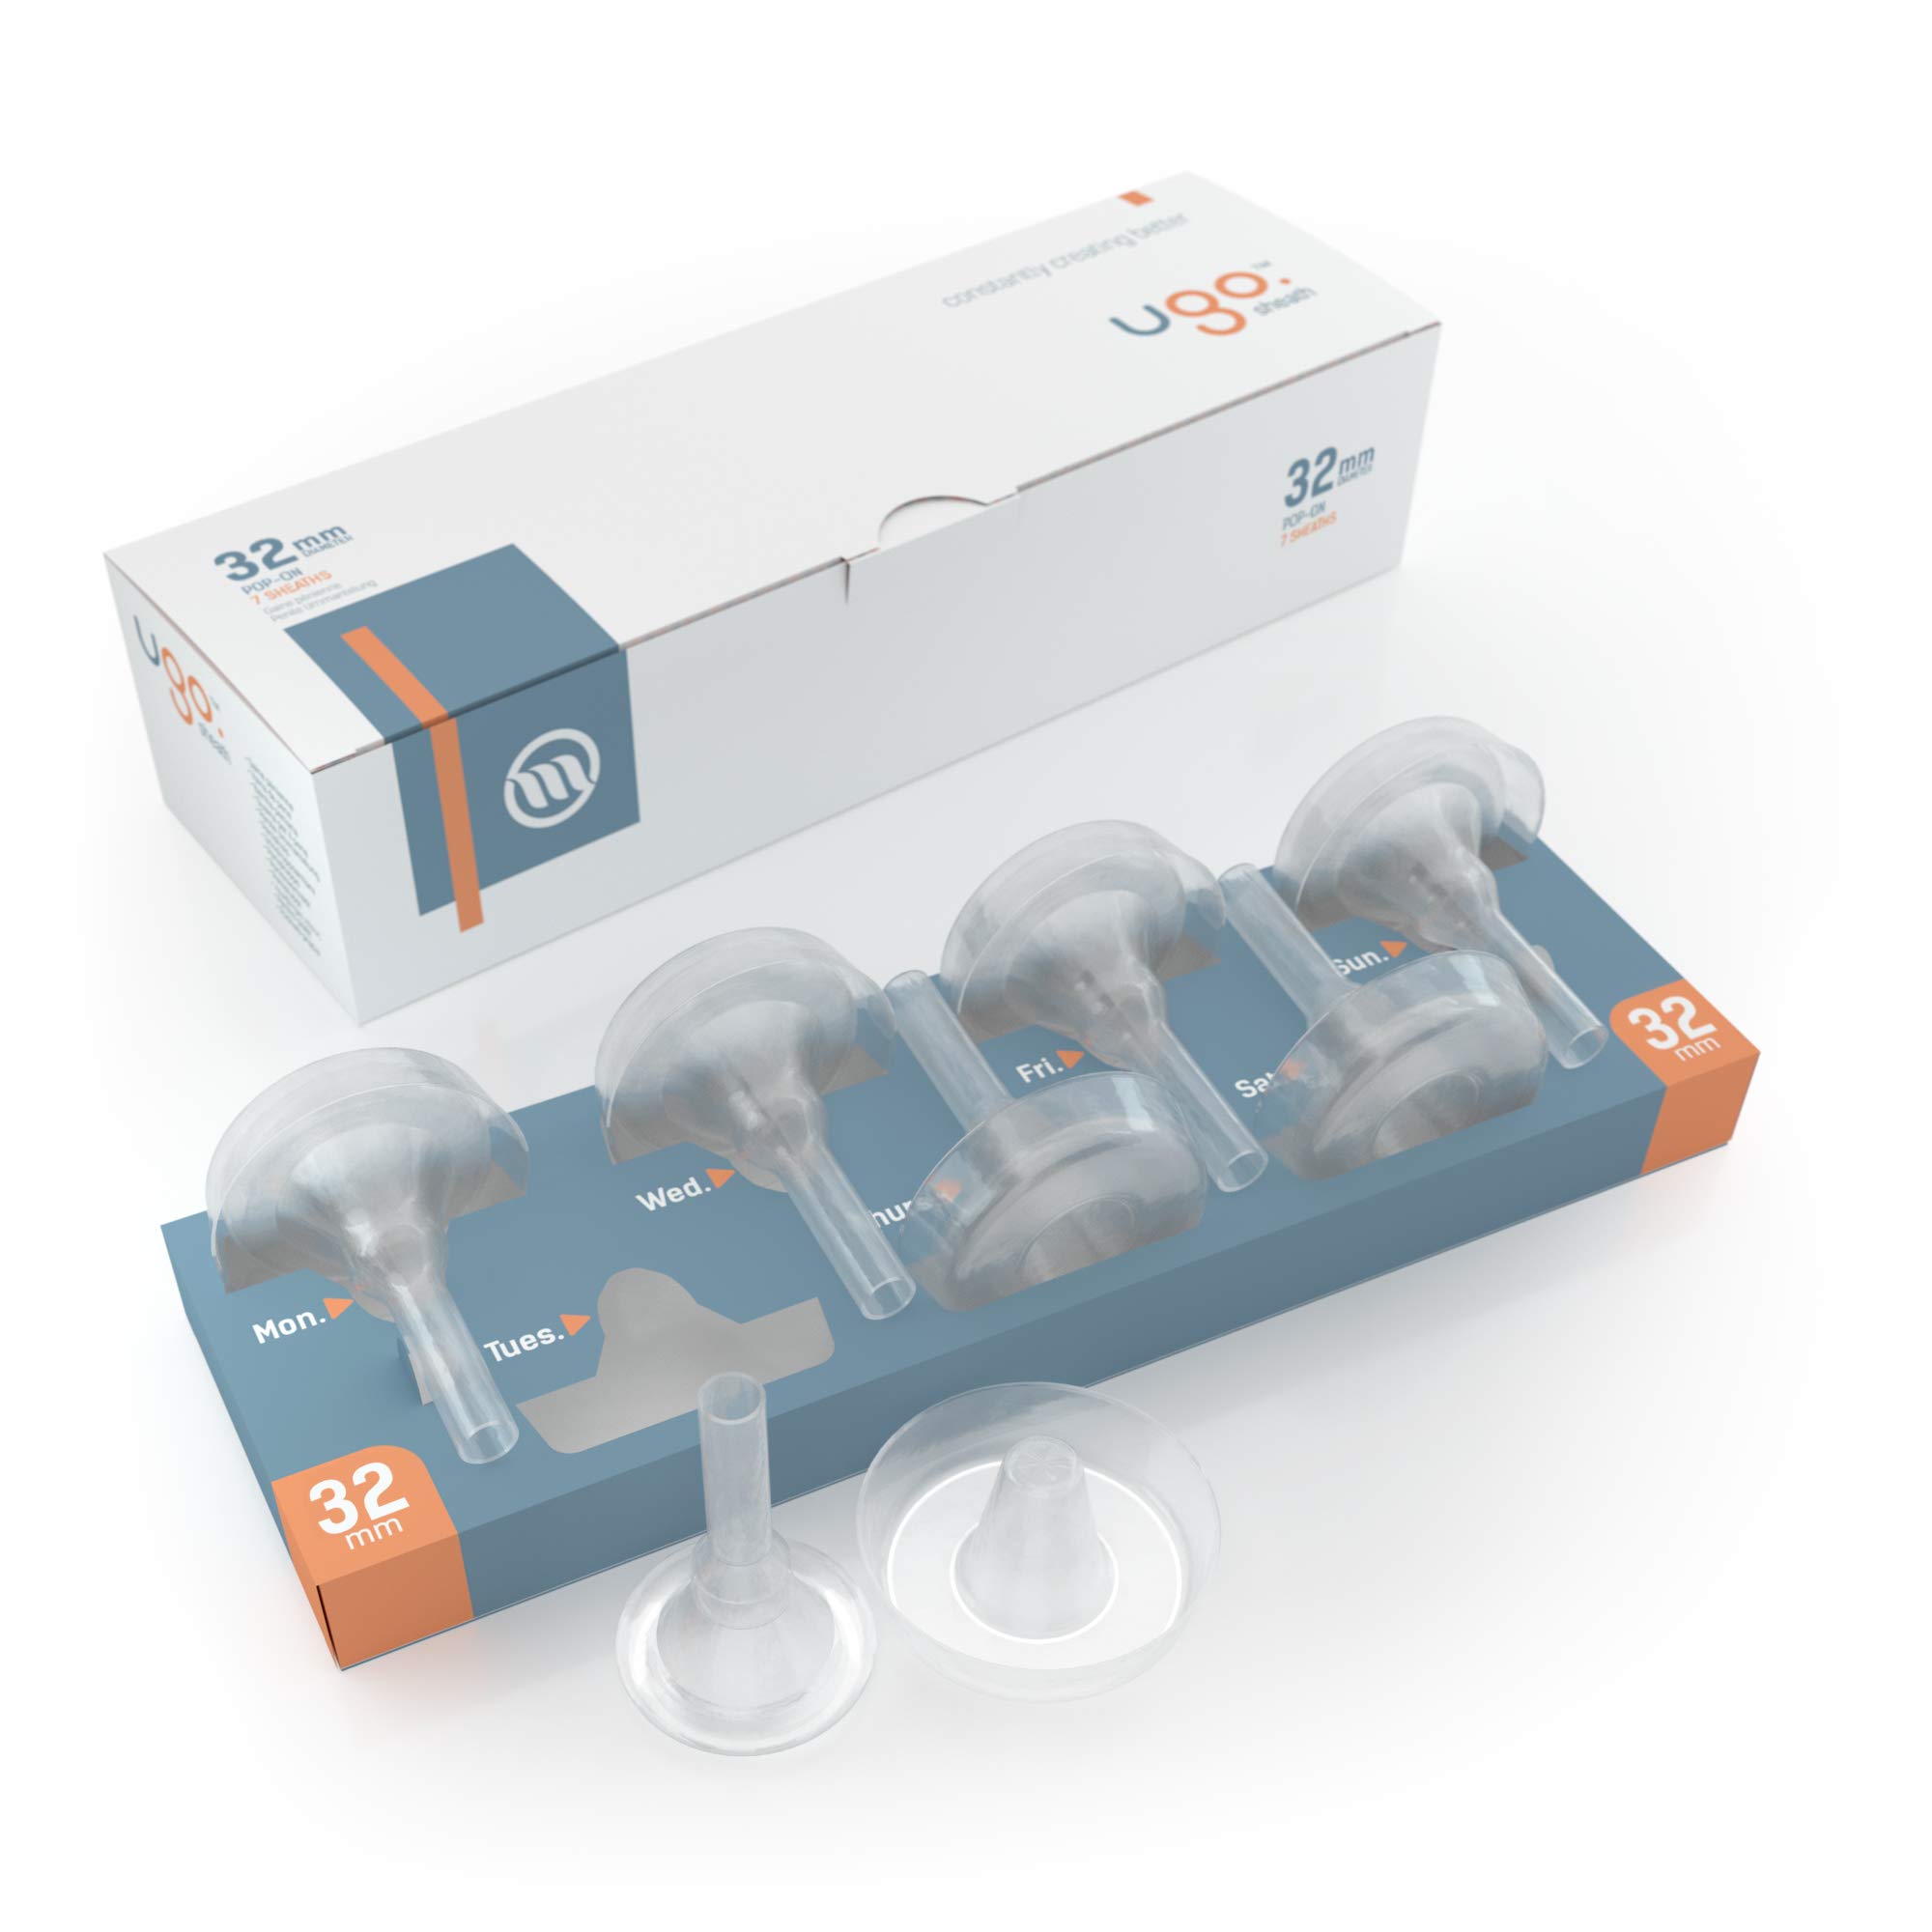 Ugo-Scheide (x28) - 1-Monats-Versorgung mit Kondomen für externe Urin-Katheter - selbstklebend und latexfrei (Länge - Kurz, Durchmesser - 32mm)